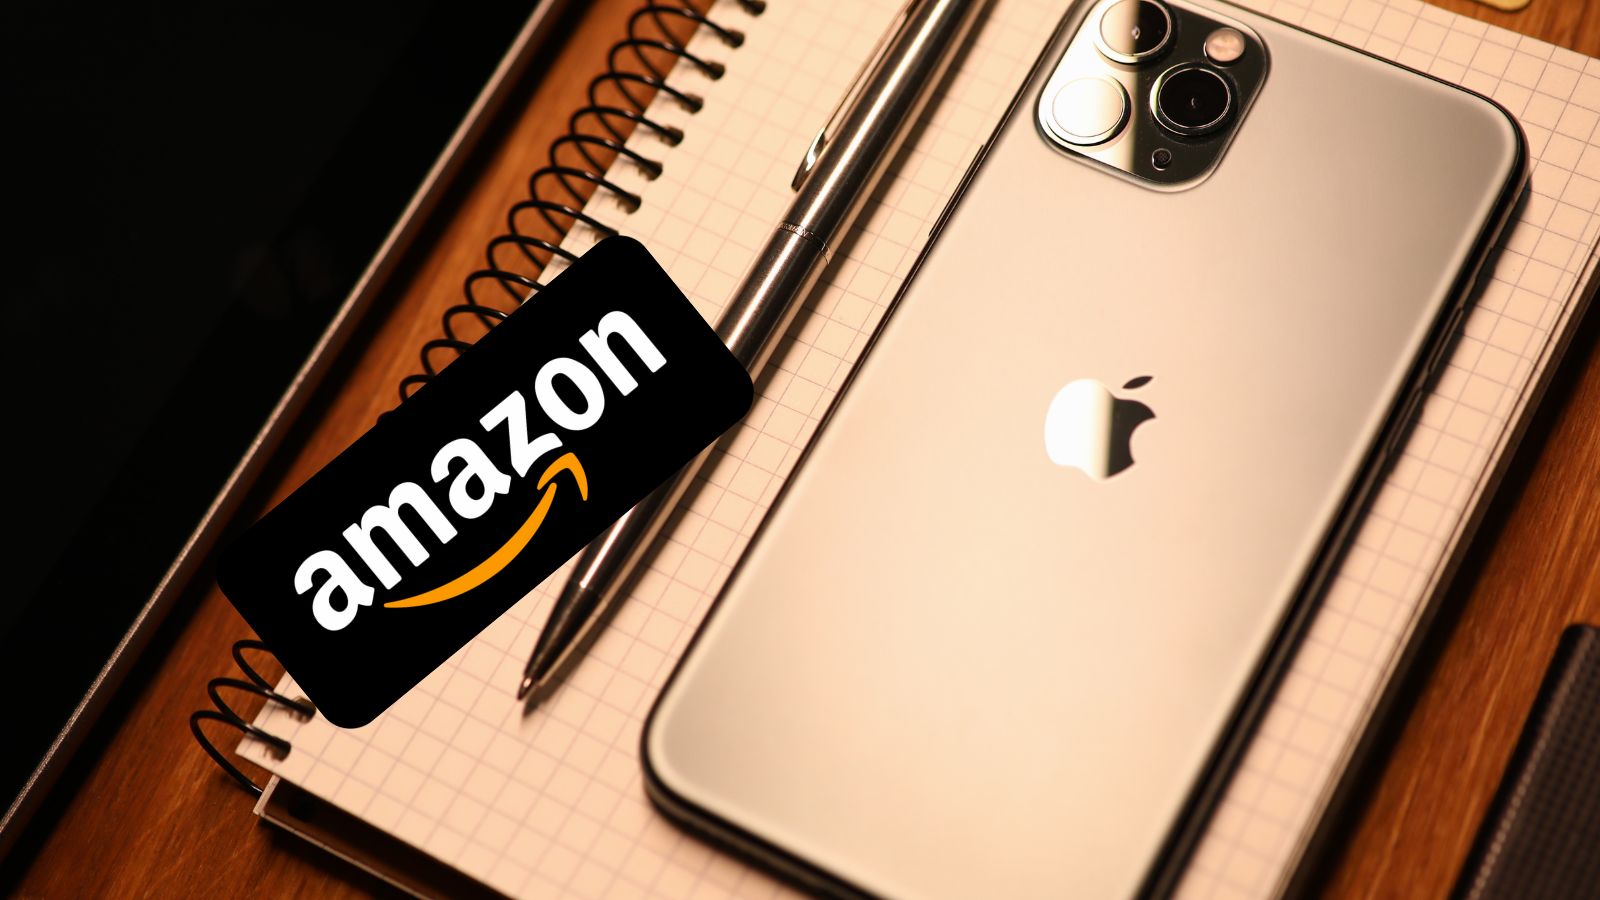 Amazon, i migliori accessori per Apple iPhone in OFFERTA quasi gratis